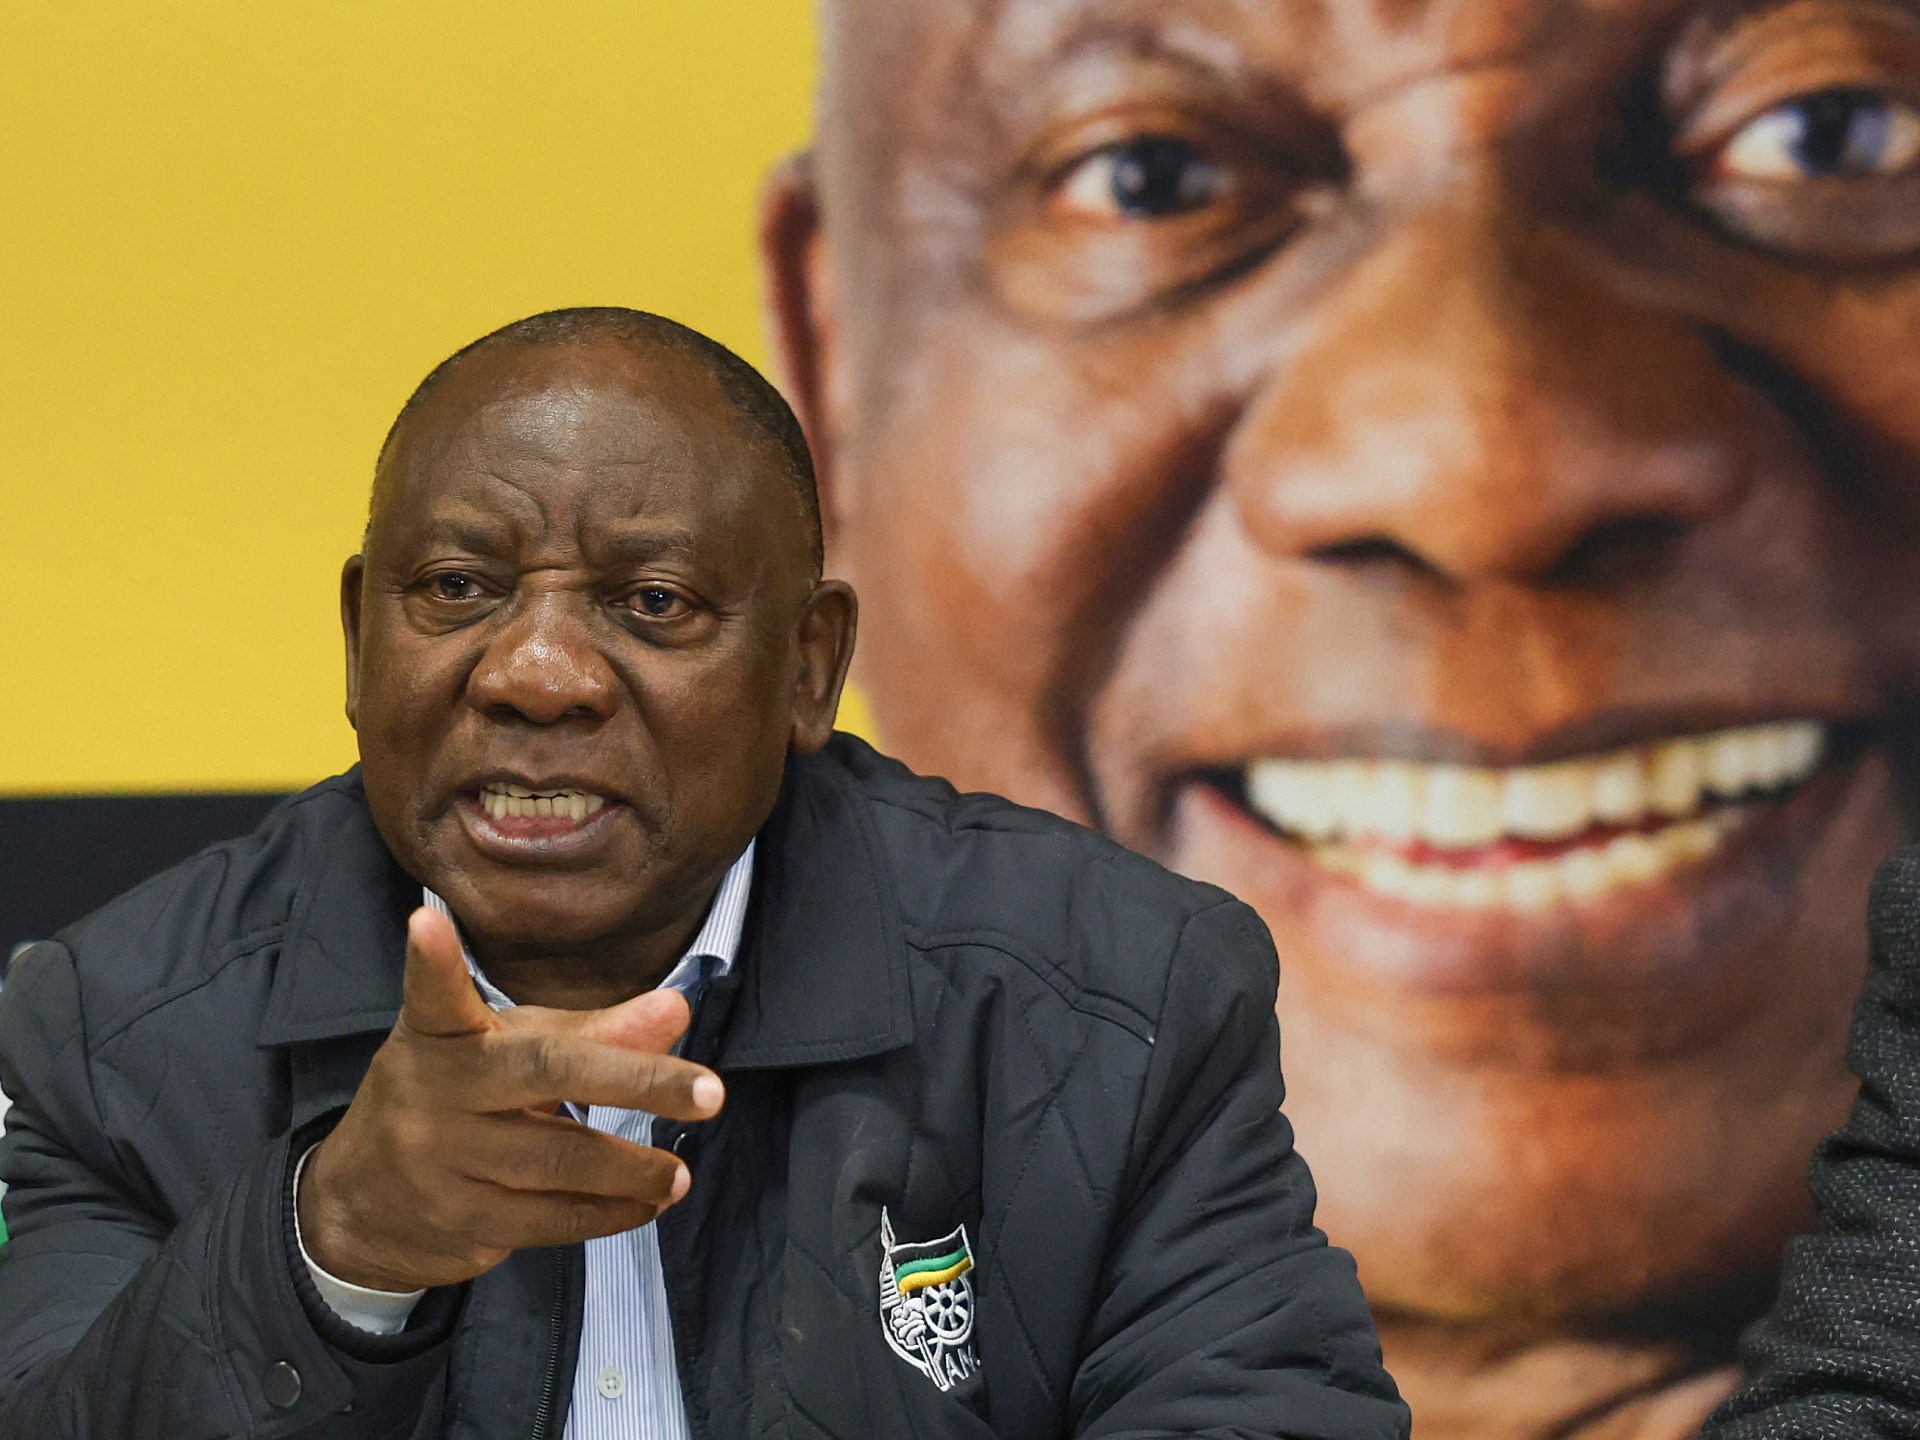 حزب المؤتمر الوطني الأفريقي في جنوب أفريقيا يريد حكومة وحدة وطنية: ما هي؟  |  أخبار الانتخابات